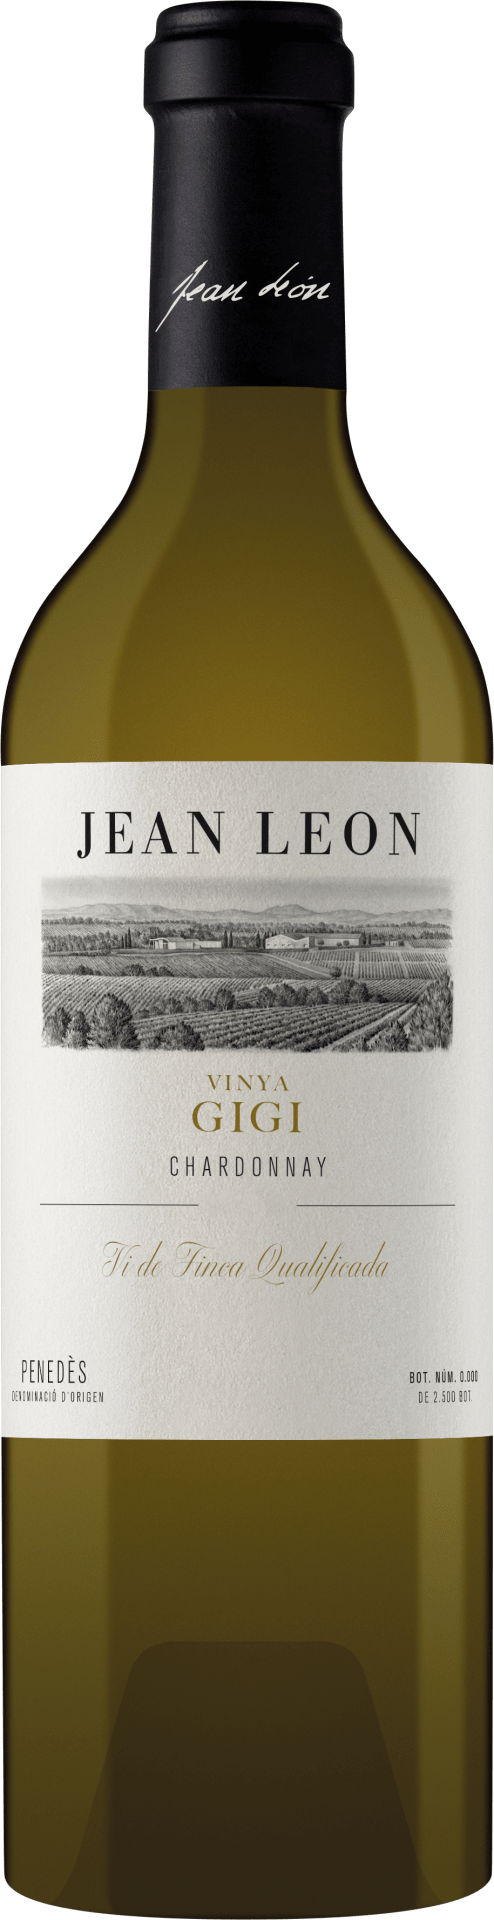 Vinya Gigi Chardonnay